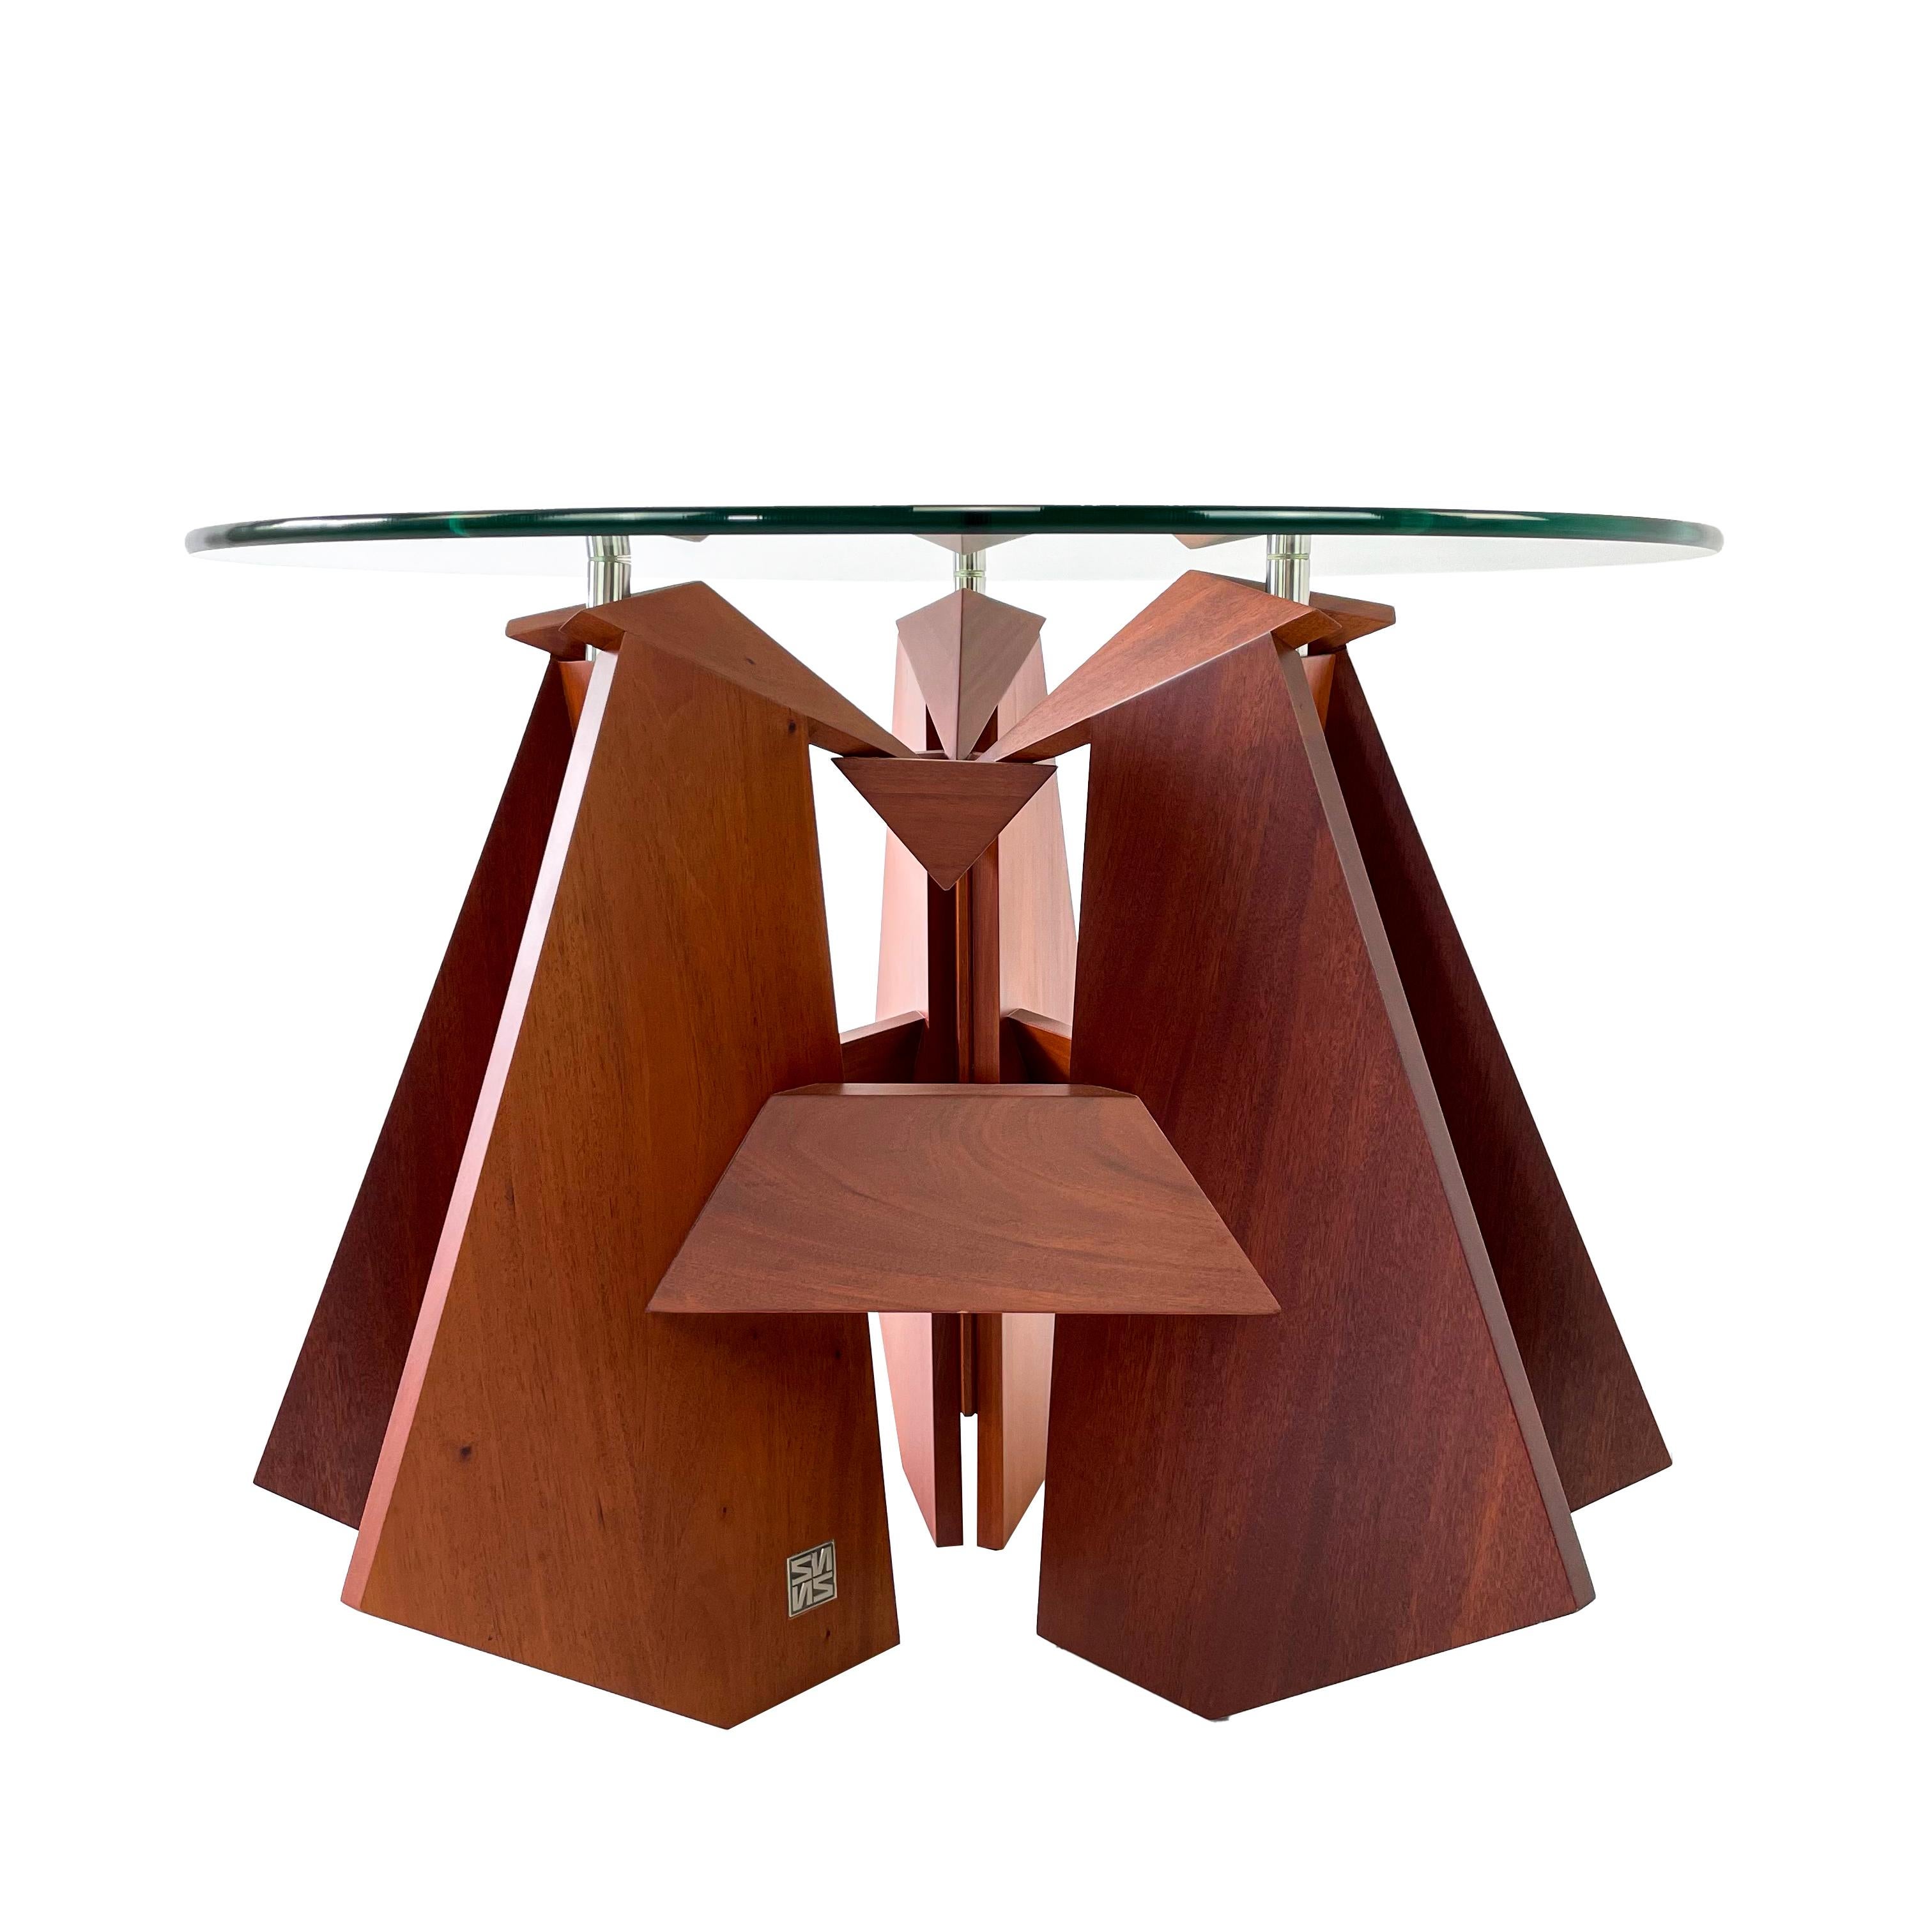 Moderner Cocktailtisch aus Massivholz und Glas von Pierre Sarkis aus der Kollektion Valentina. Inspiriert von der Origami-Faltentheorie, die in der grundlegenden Geometrie den Sinn des Lebens, der Wahrheit und der Schönheit findet. Eleganter